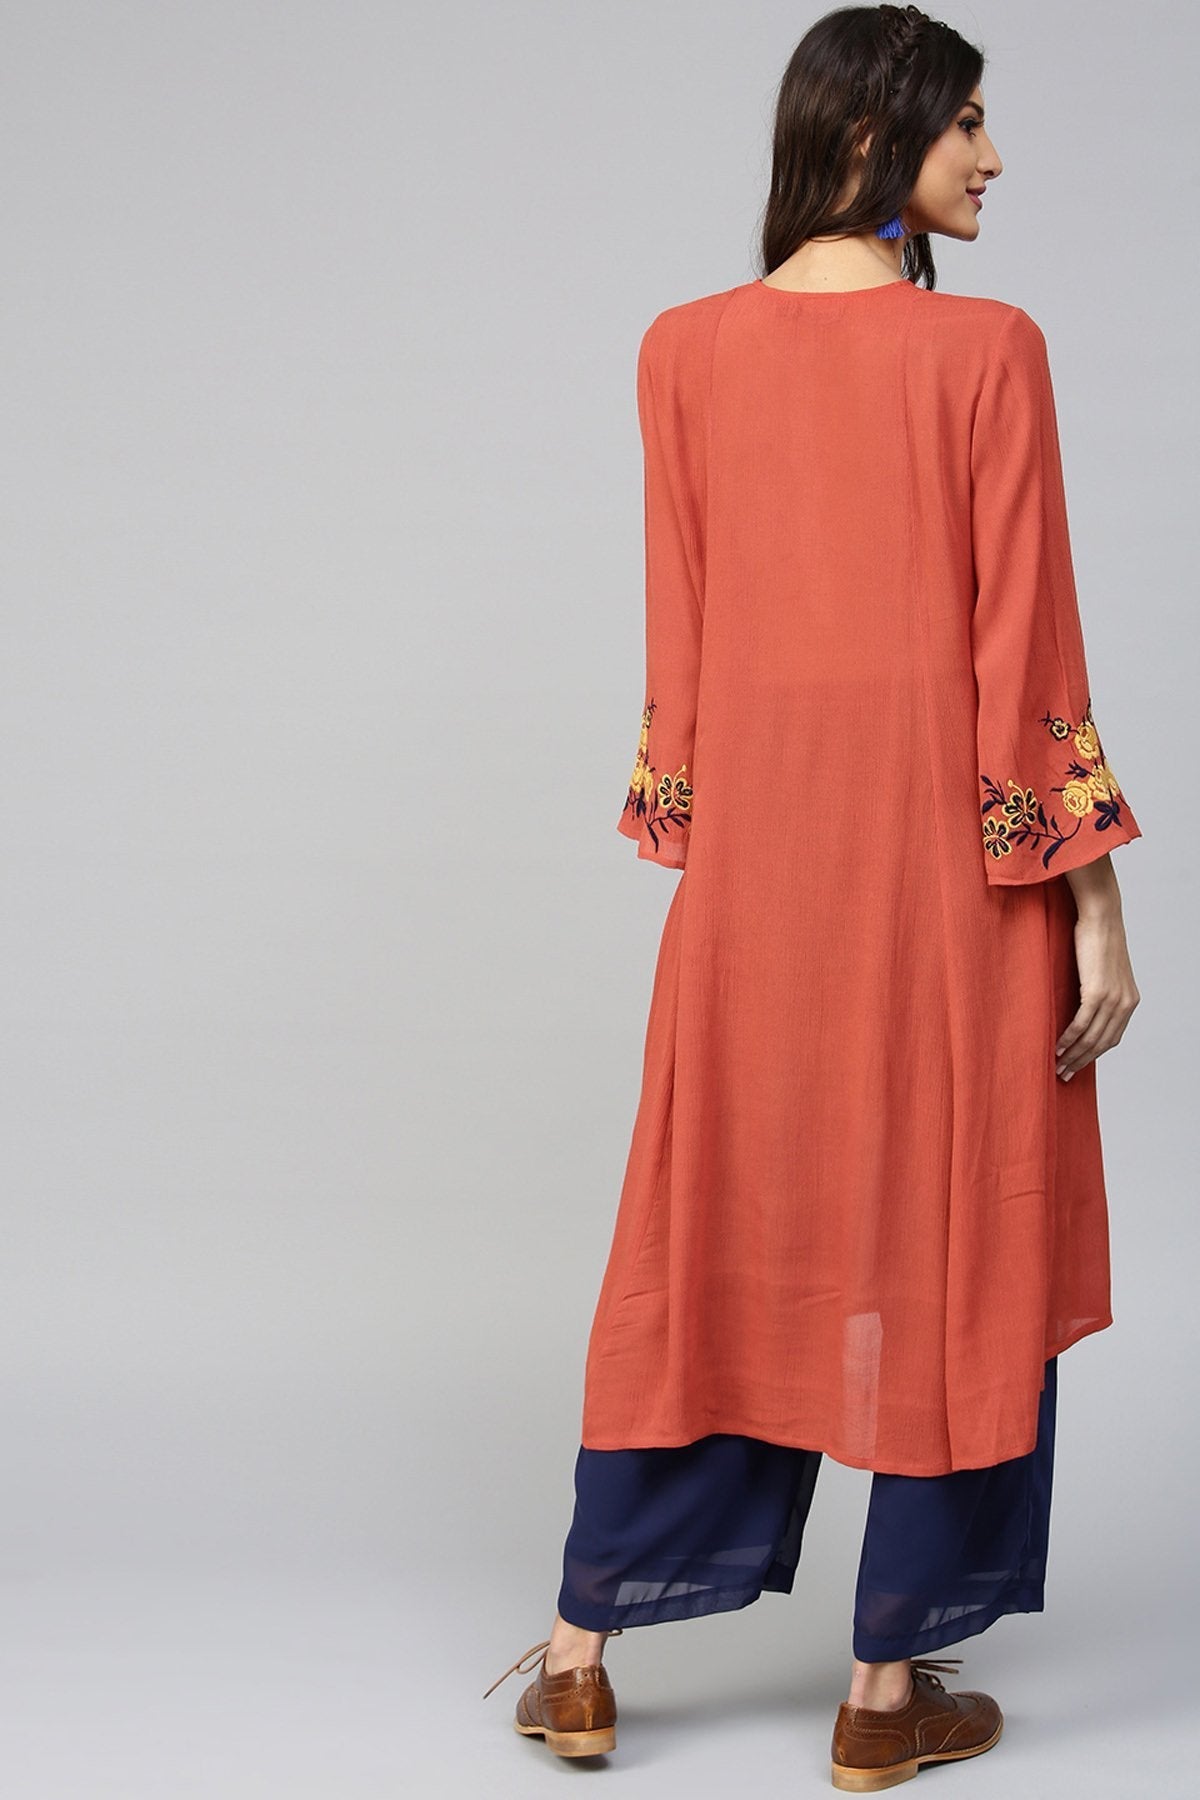 Women's Embroidered Sleeve Crinkled Rust Kurta - SHAE